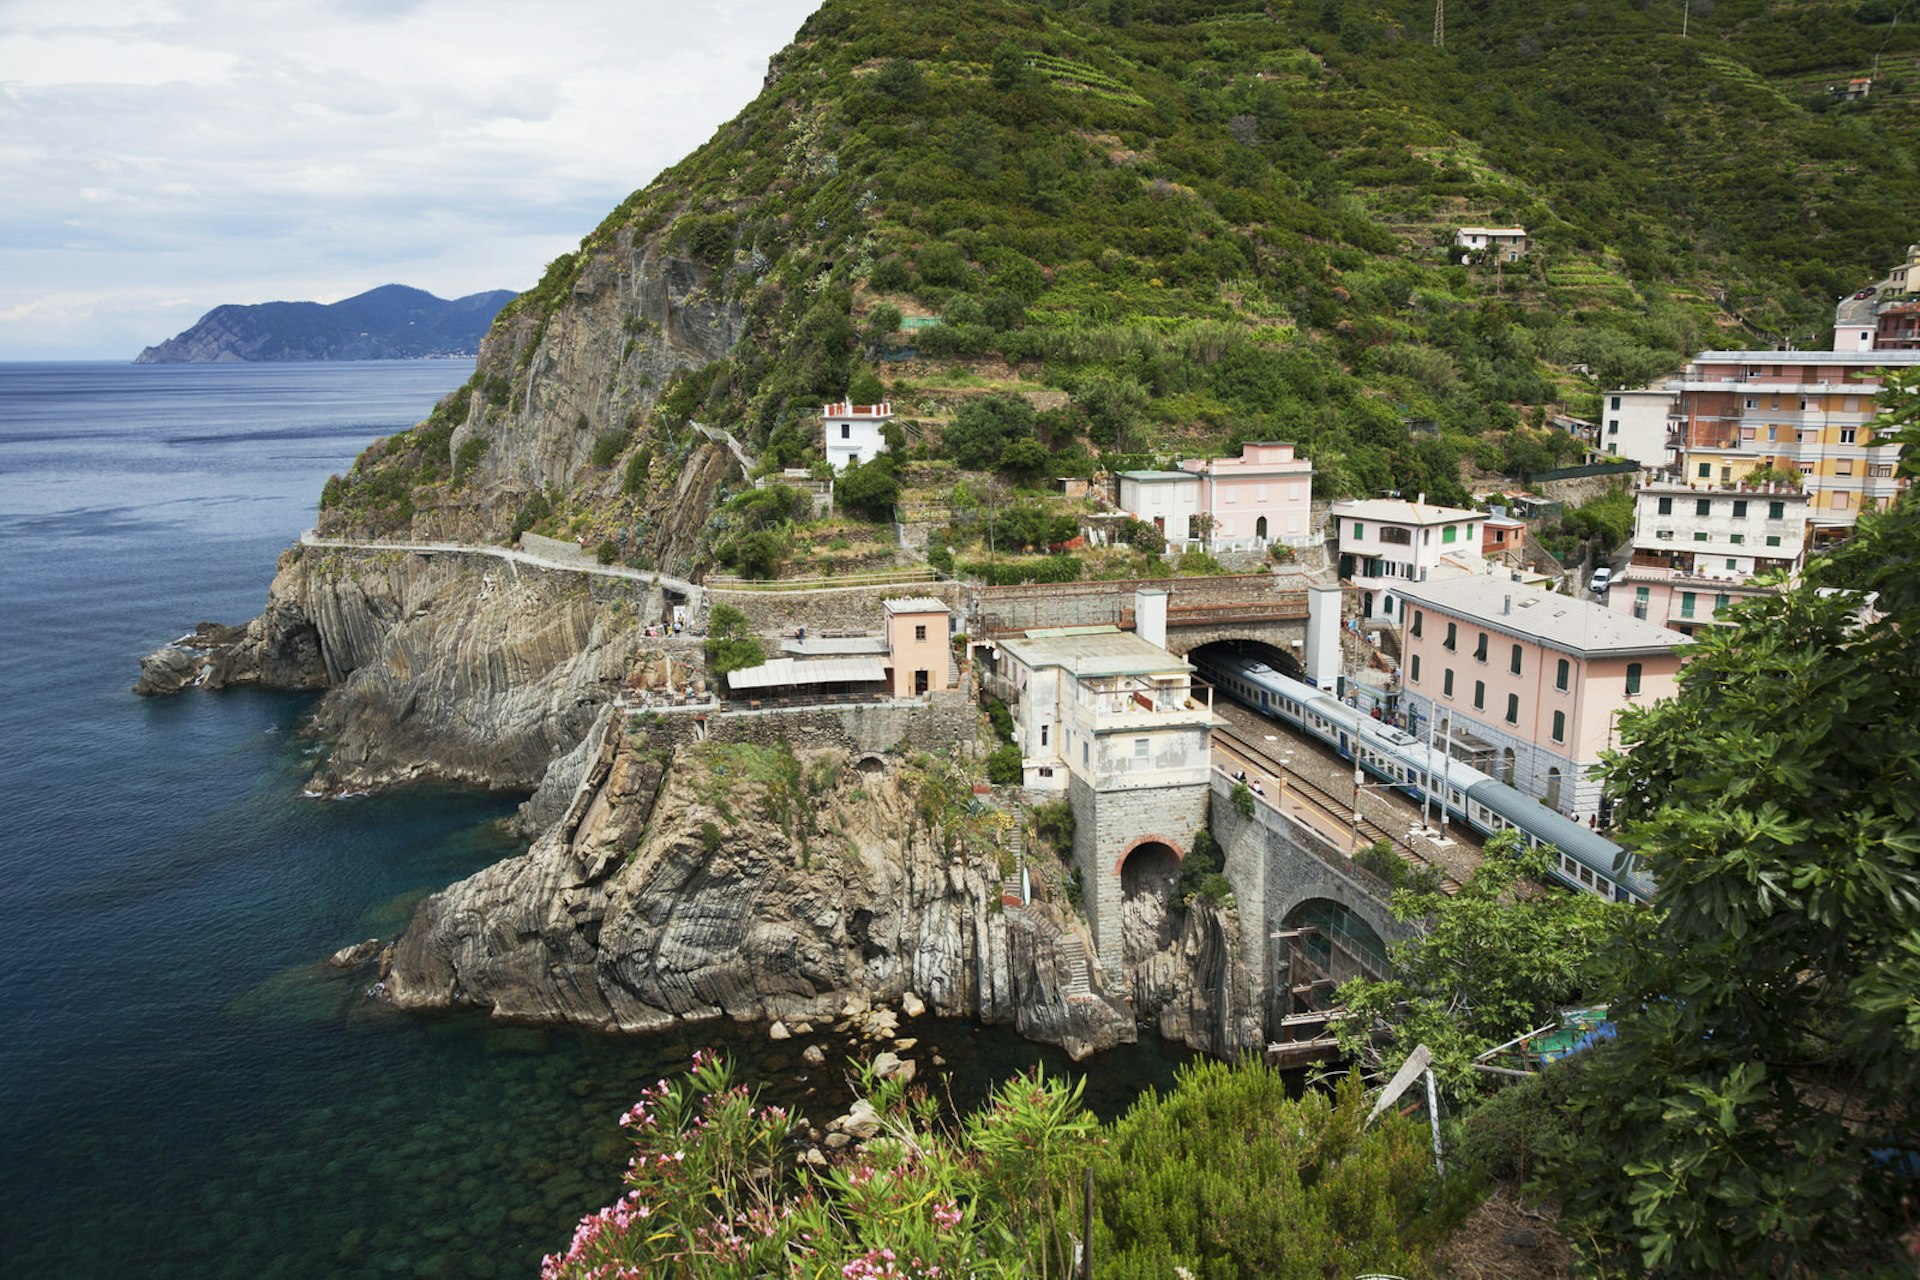 Train passing through a tunnel on the Cinque Terre coast near Riomaggiore